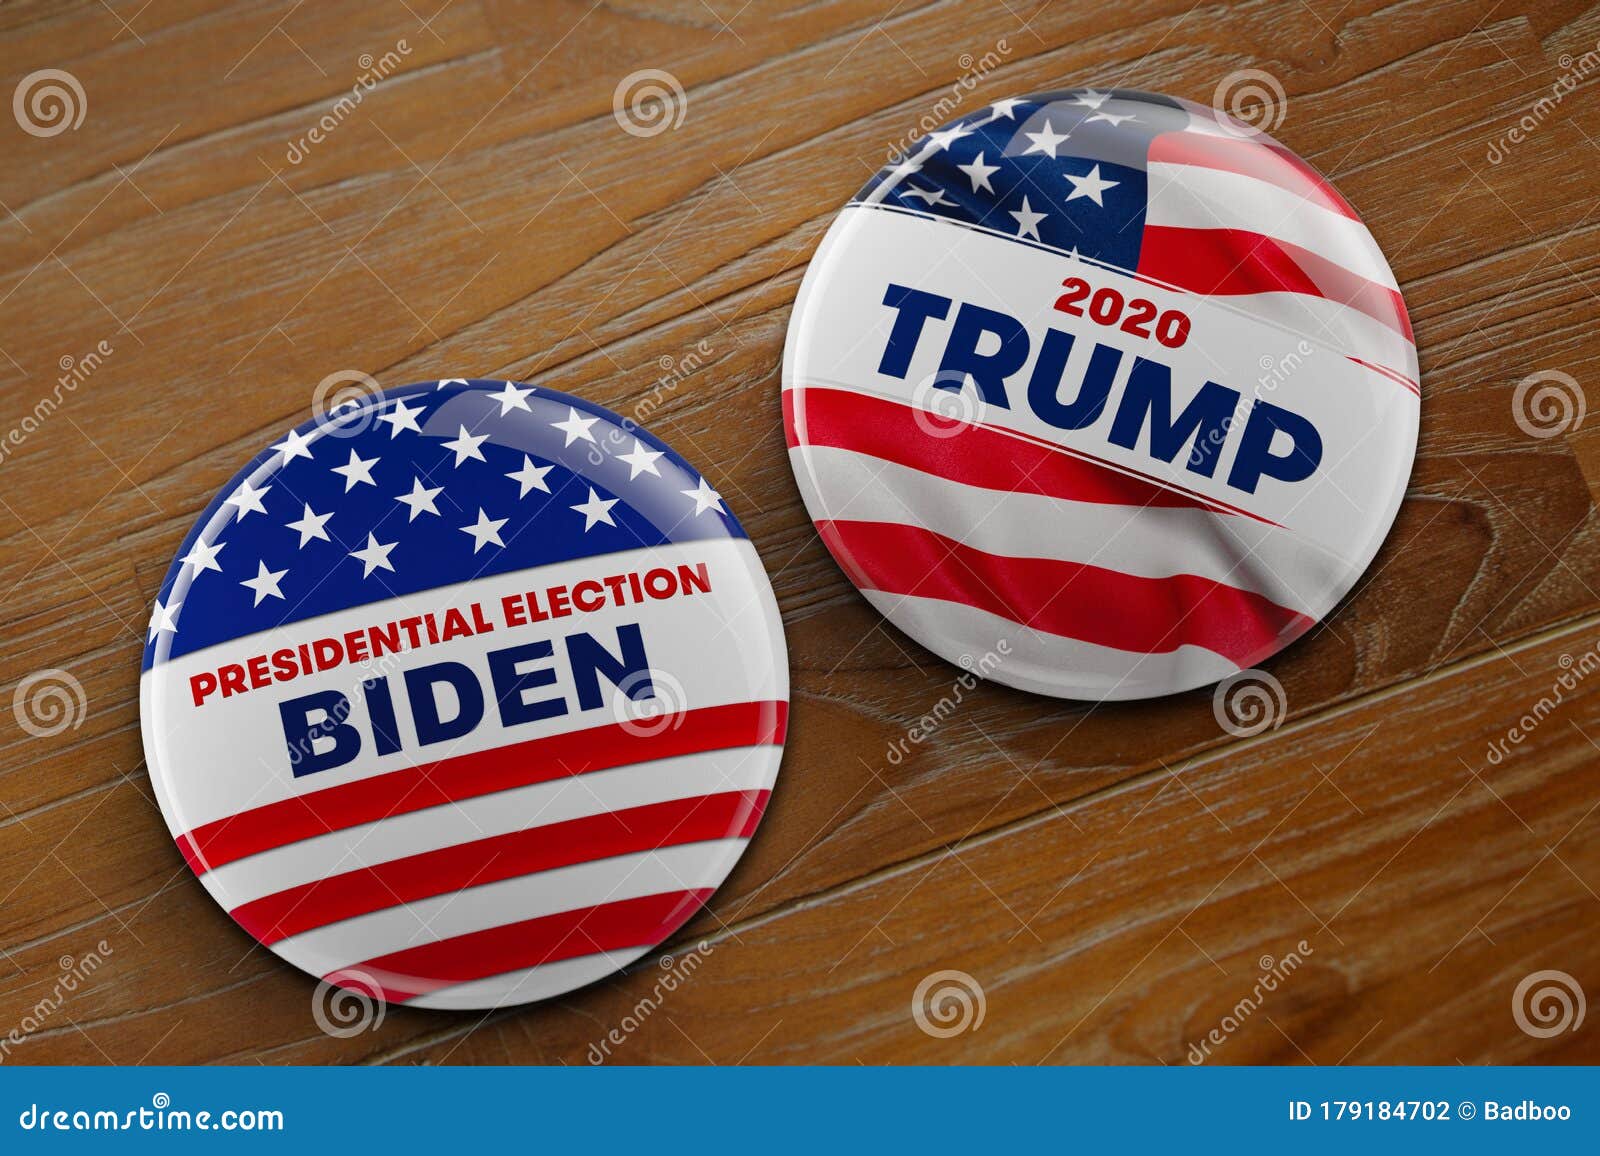 2008 Barack Obama/Joe Biden "For Change" Presidential Election Campaign Pinback 